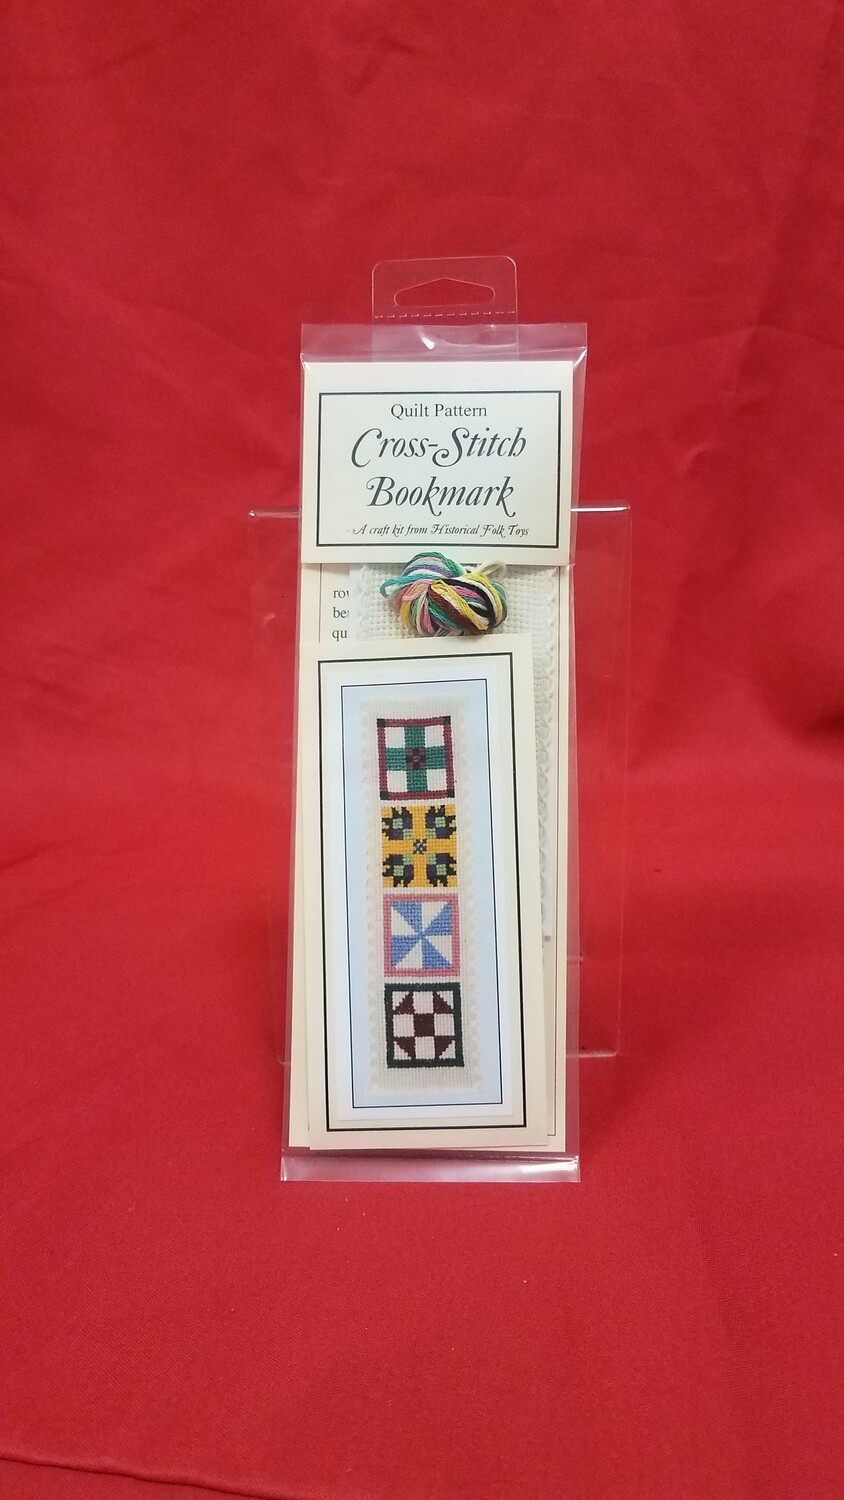 Quilt Pattern Cross-Stitch Bookmark